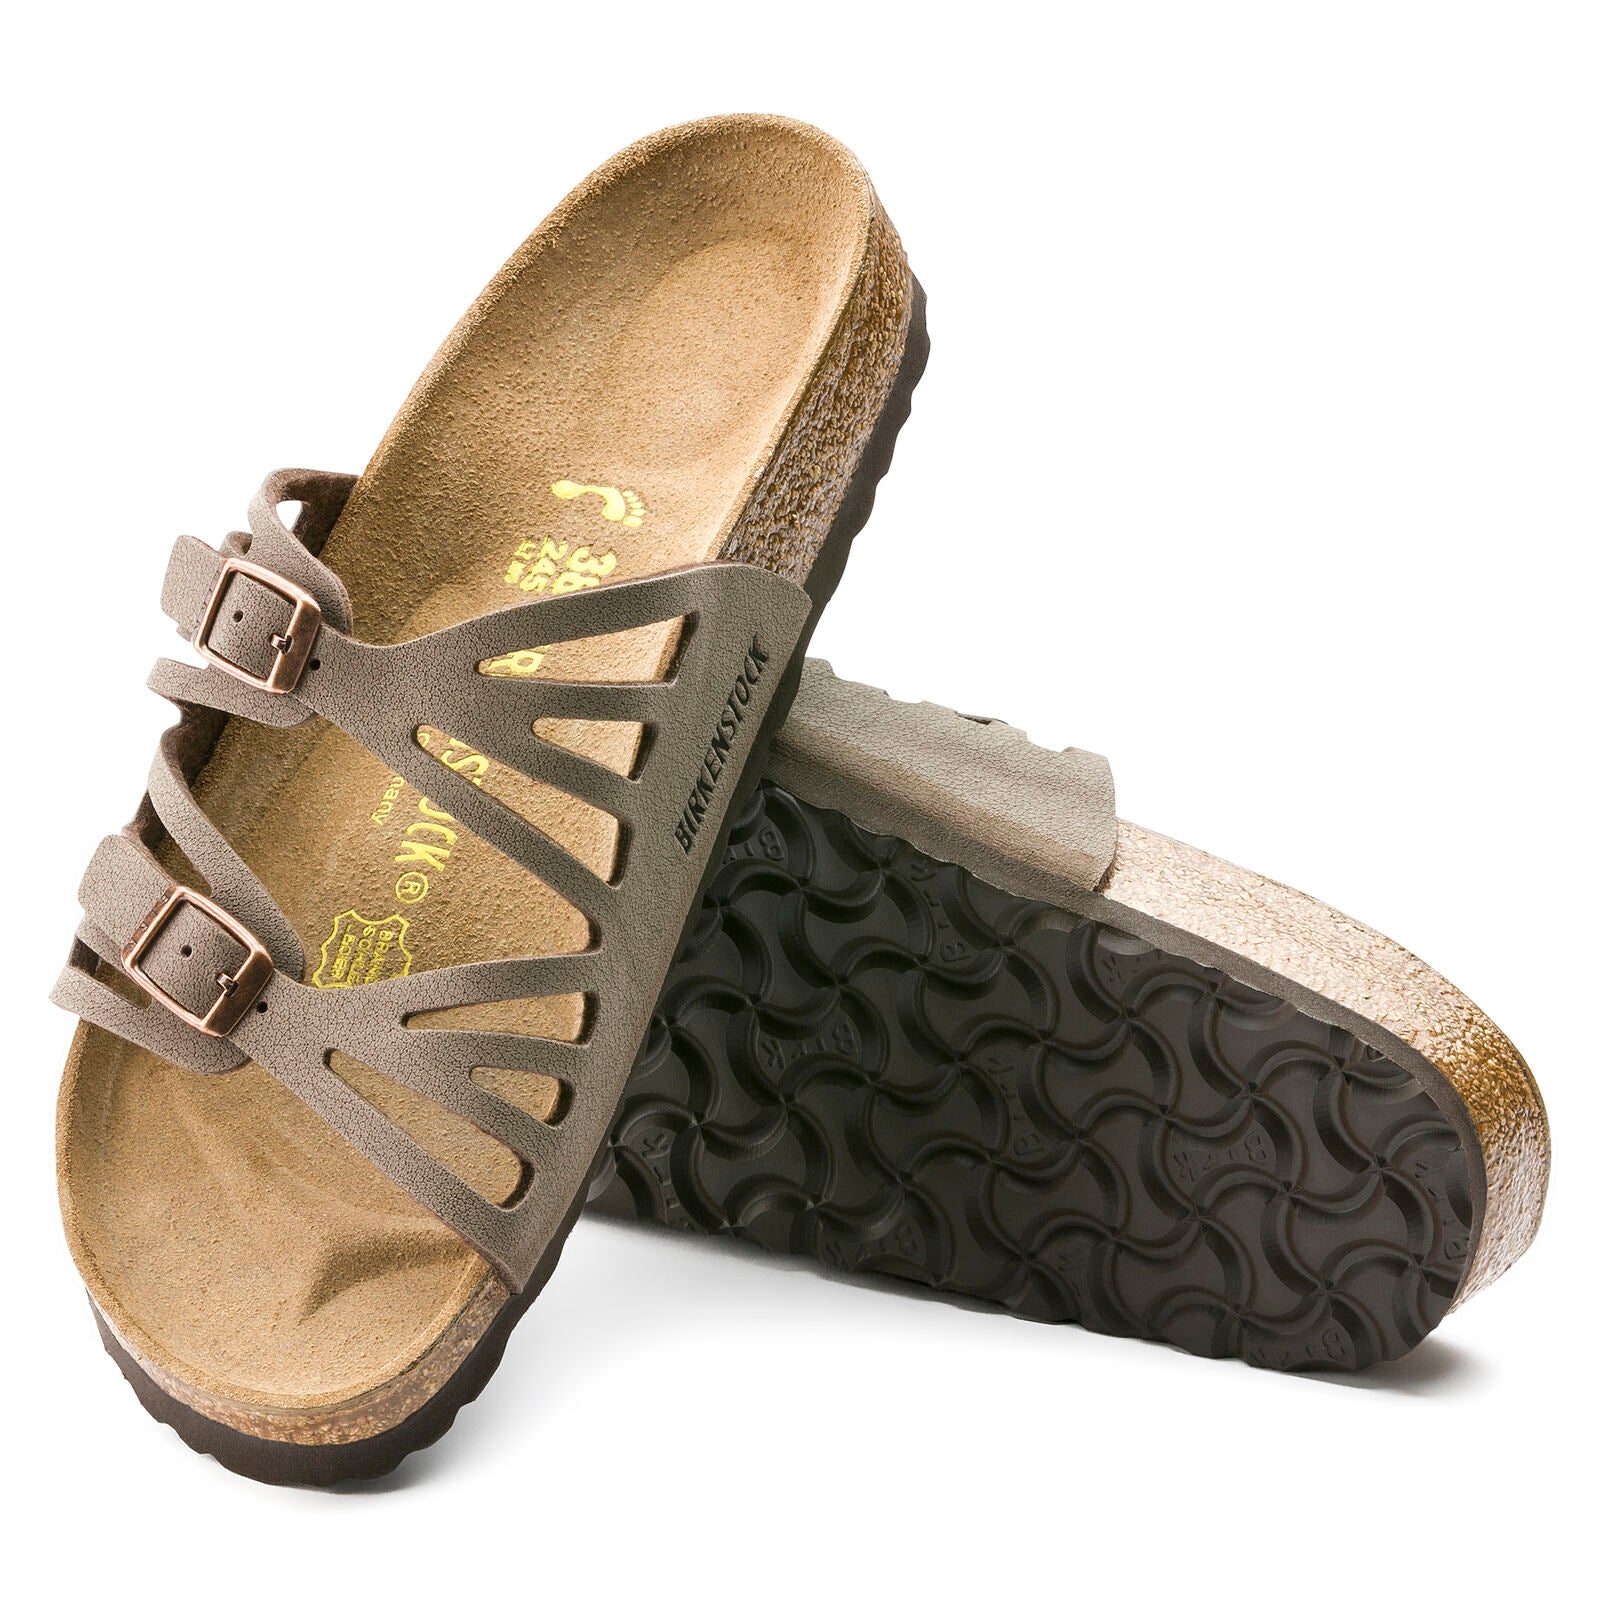 Birkenstock Womens Granada Soft Footbed Sandals - Medium/Narrow